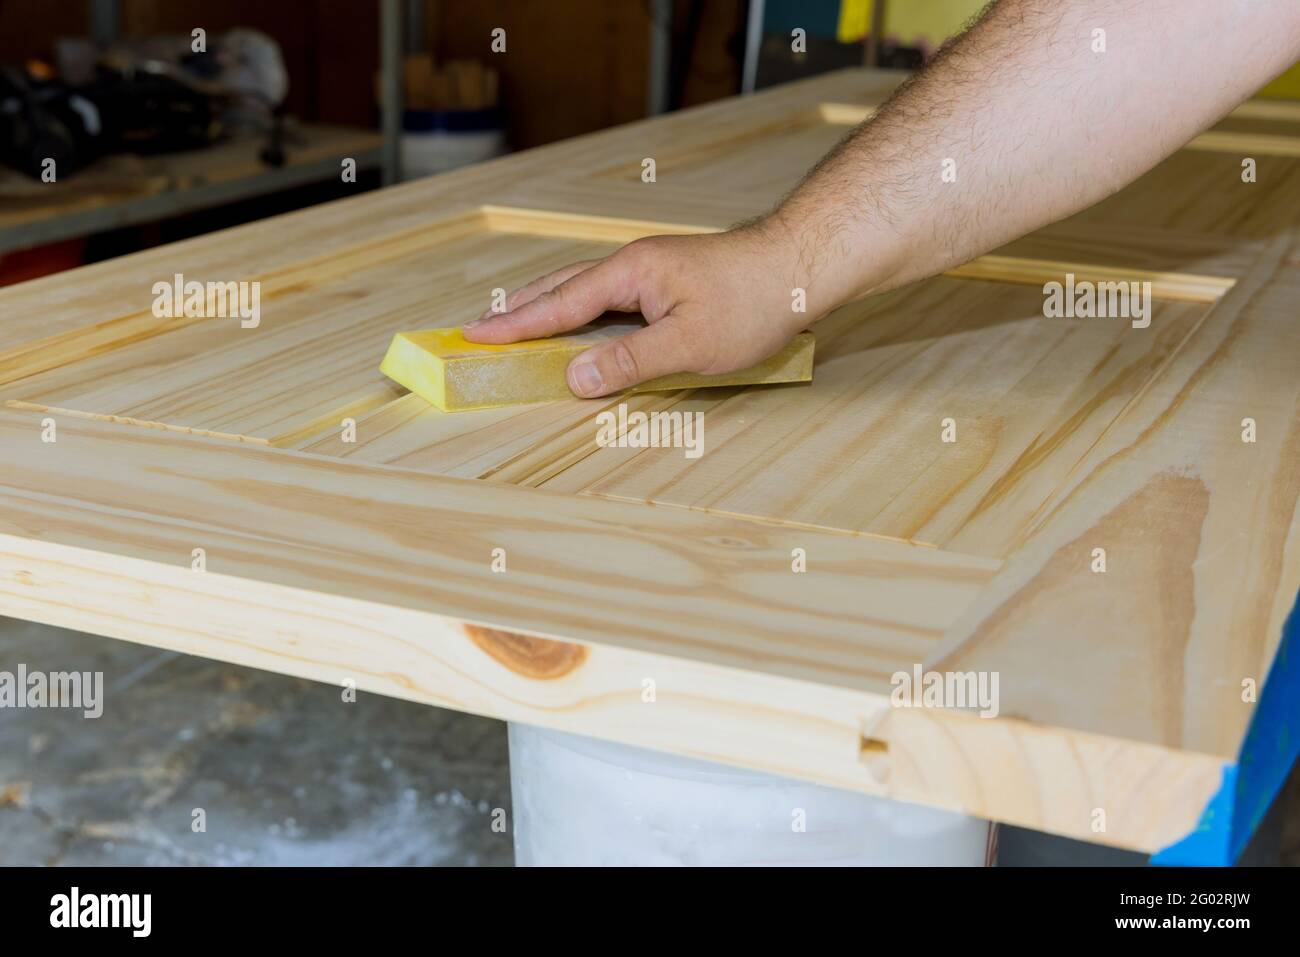 Carpenter in work on worker sanding with sanding block wooden door Stock Photo